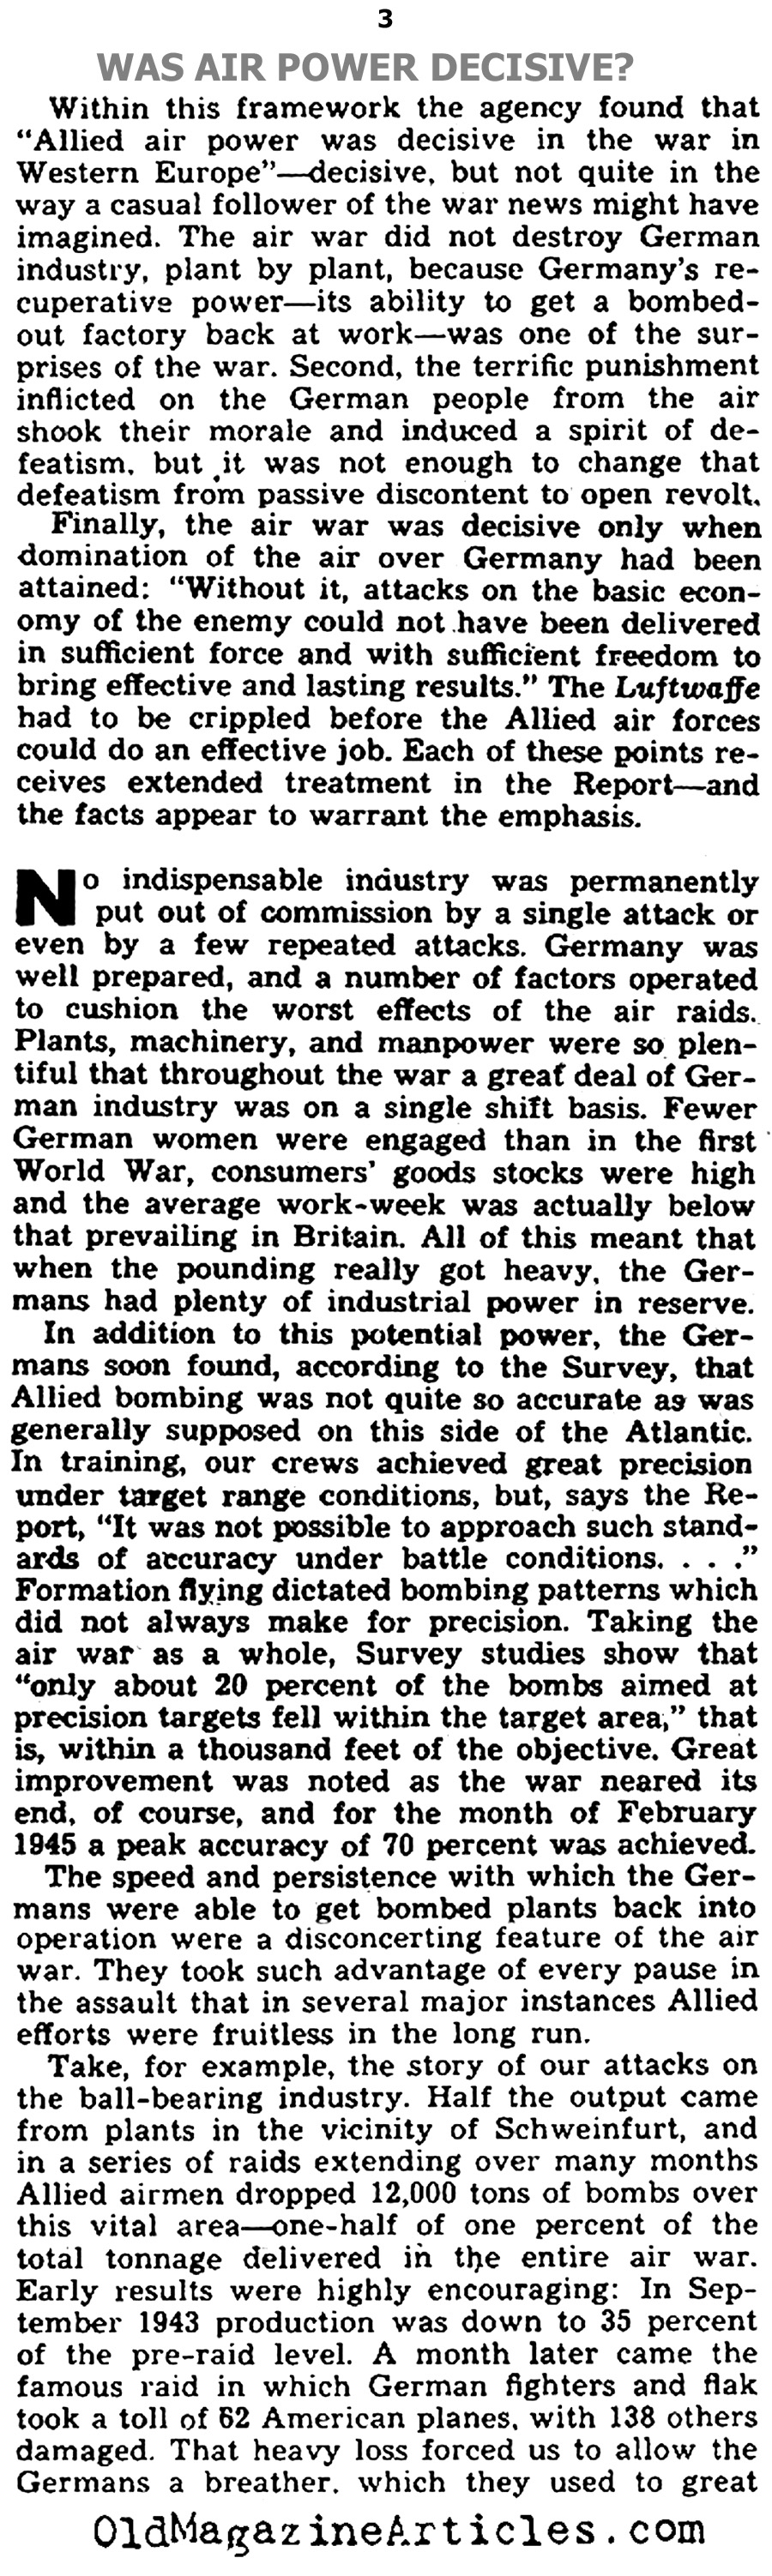 Was Allied Air Power Decisive During World War II? (Yank Magazine, 1945)